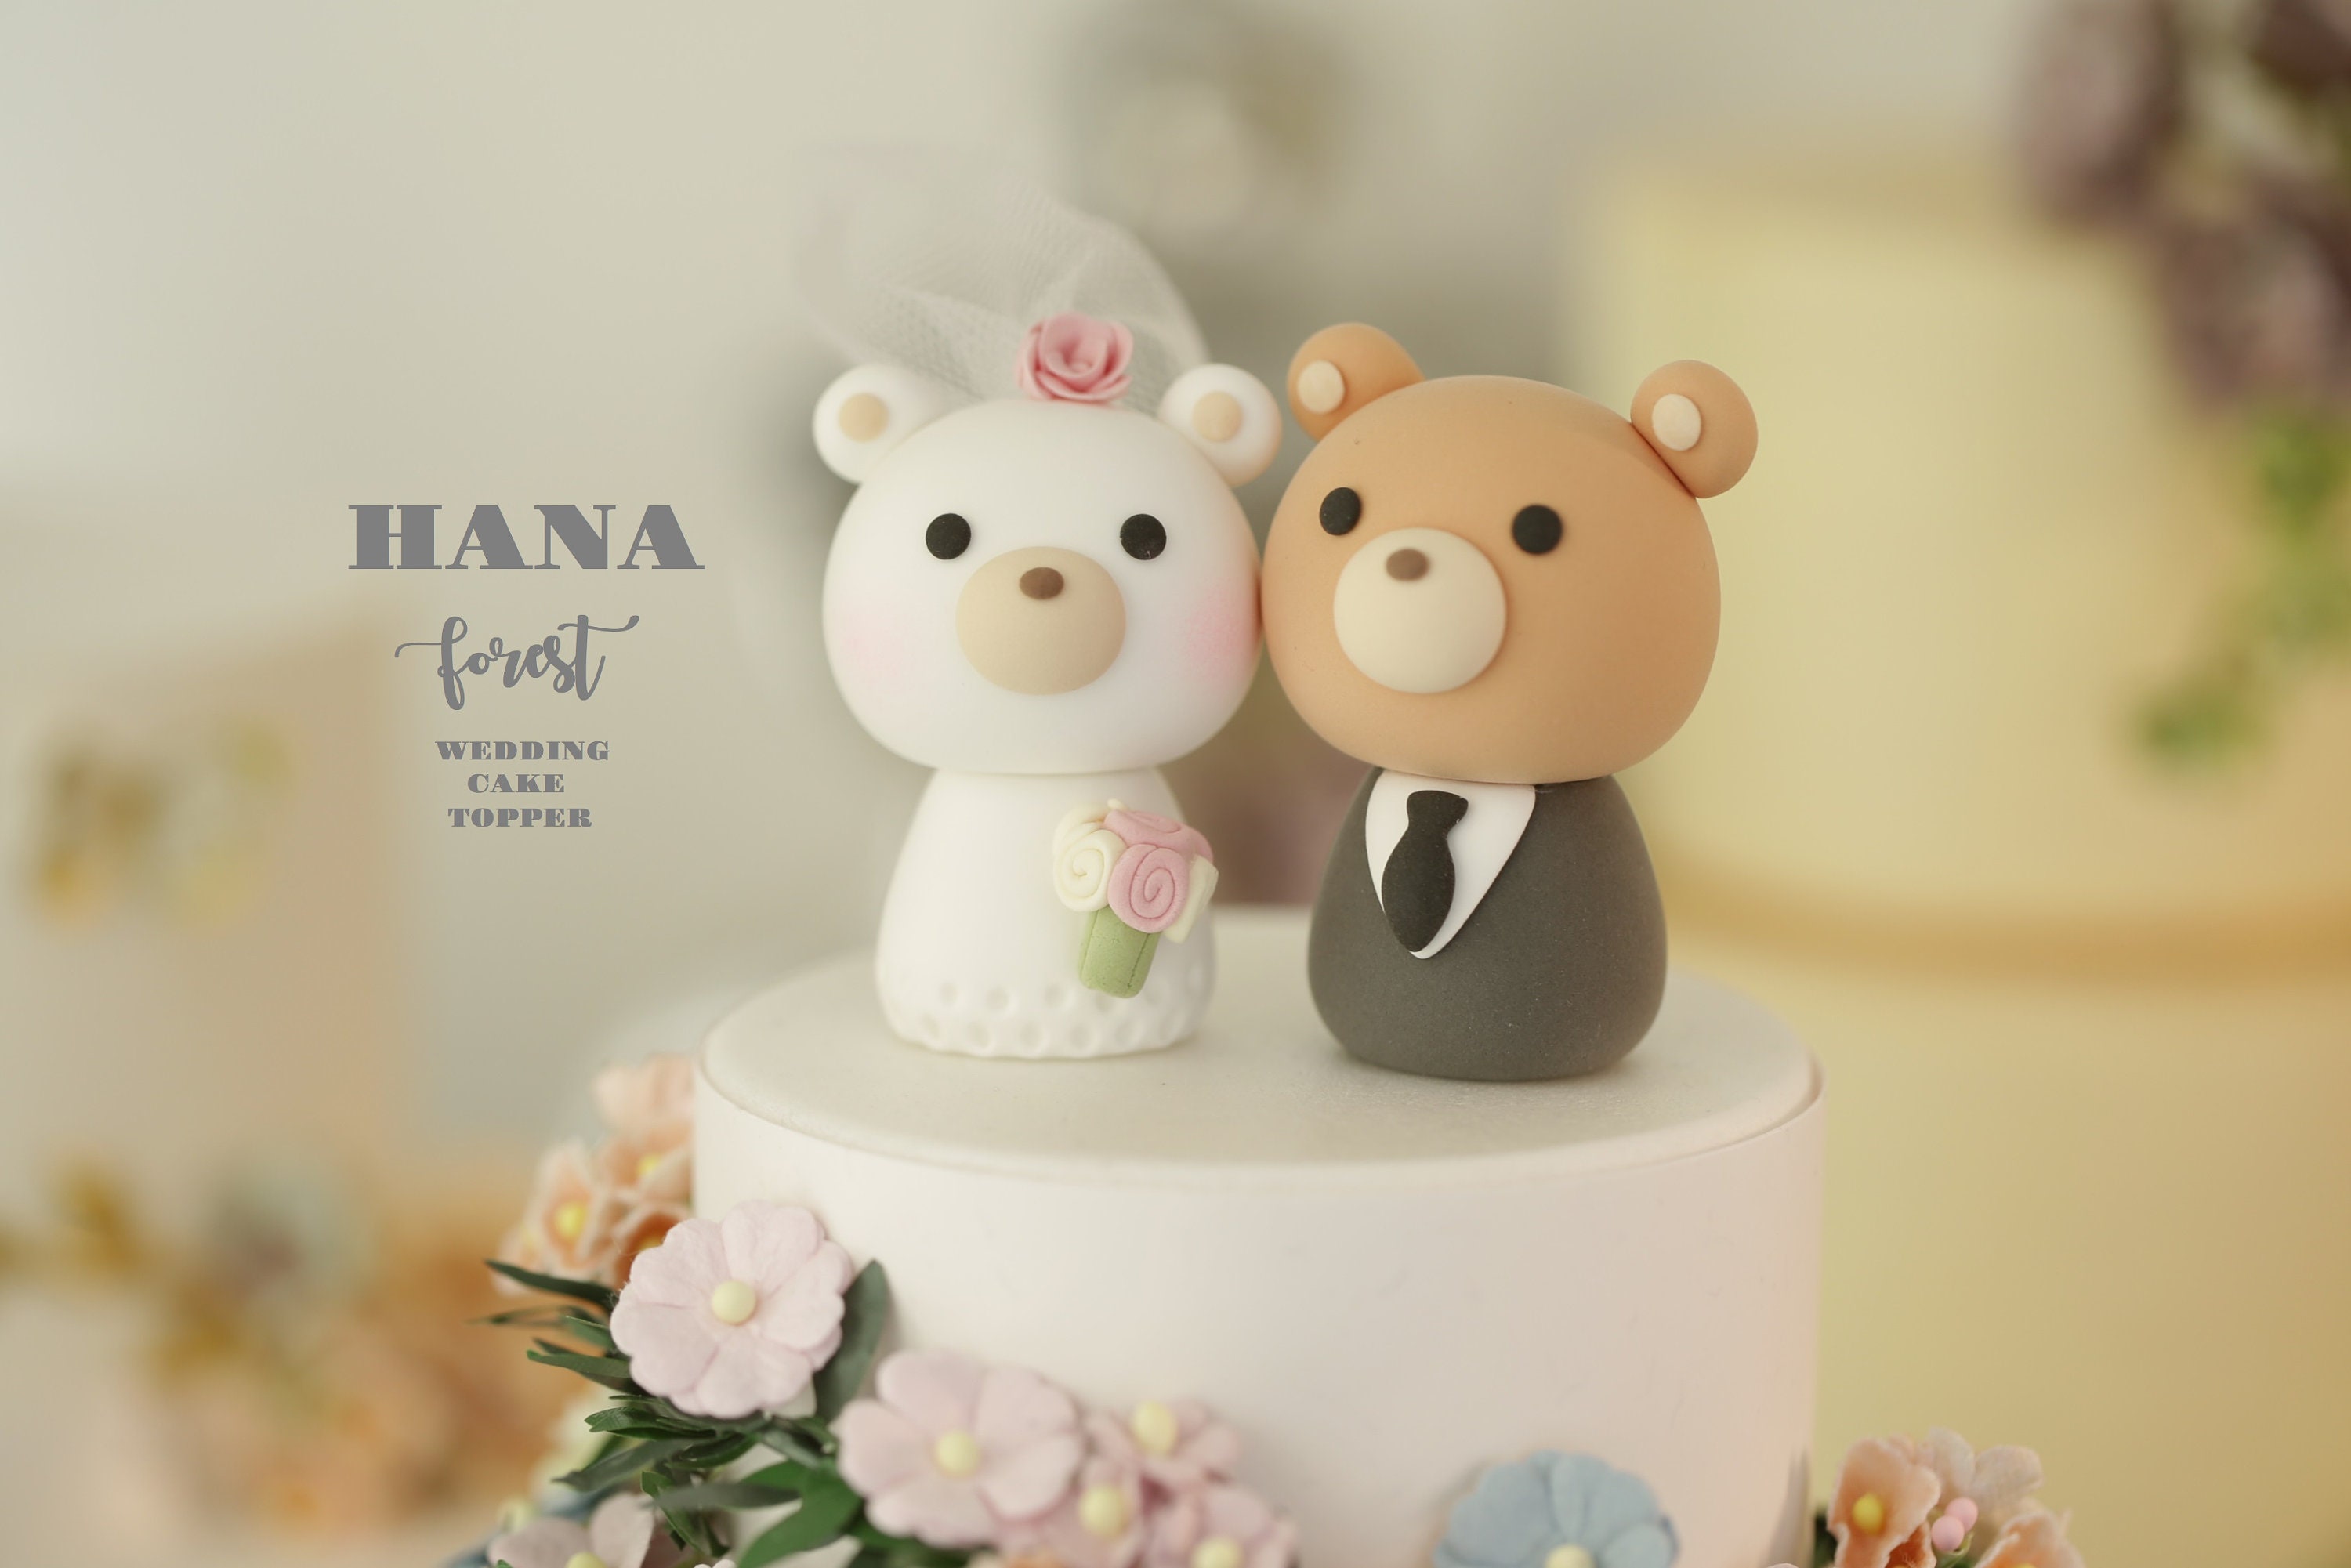 Custom Handmade Bears Wedding Cake Topper www.kust.edu.pk